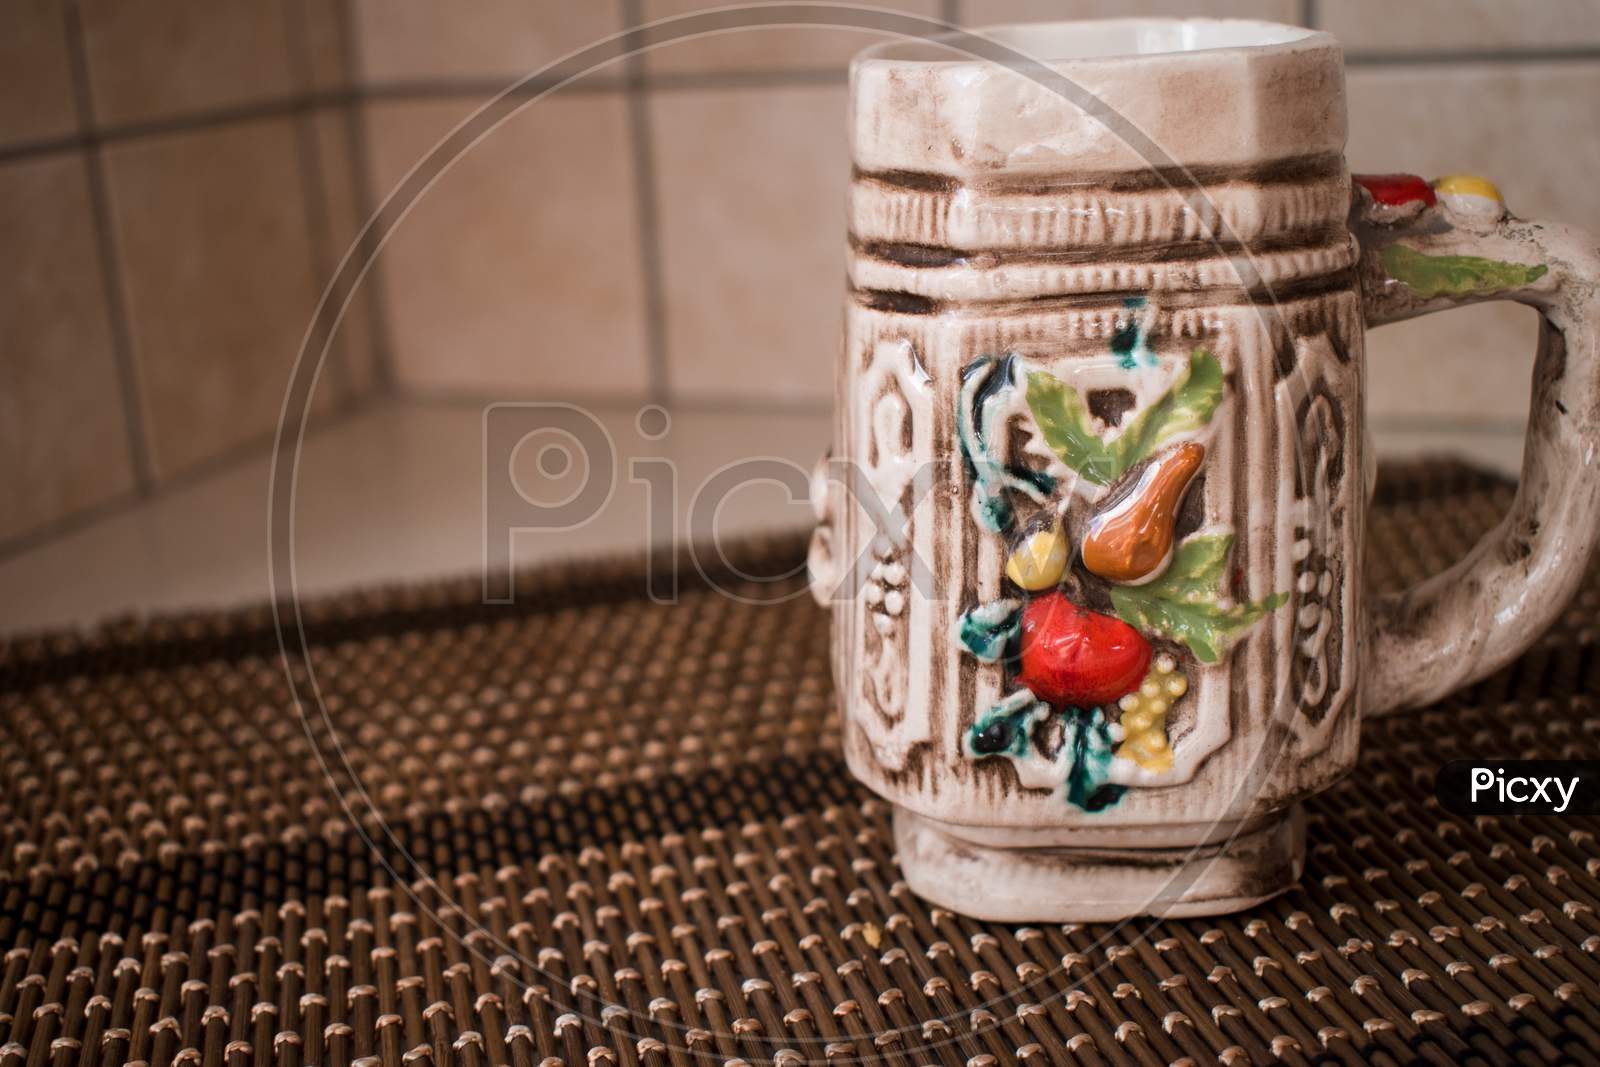 A Colorful Ceramic Empty Mug For Coffee Or Tea. Home Interior.